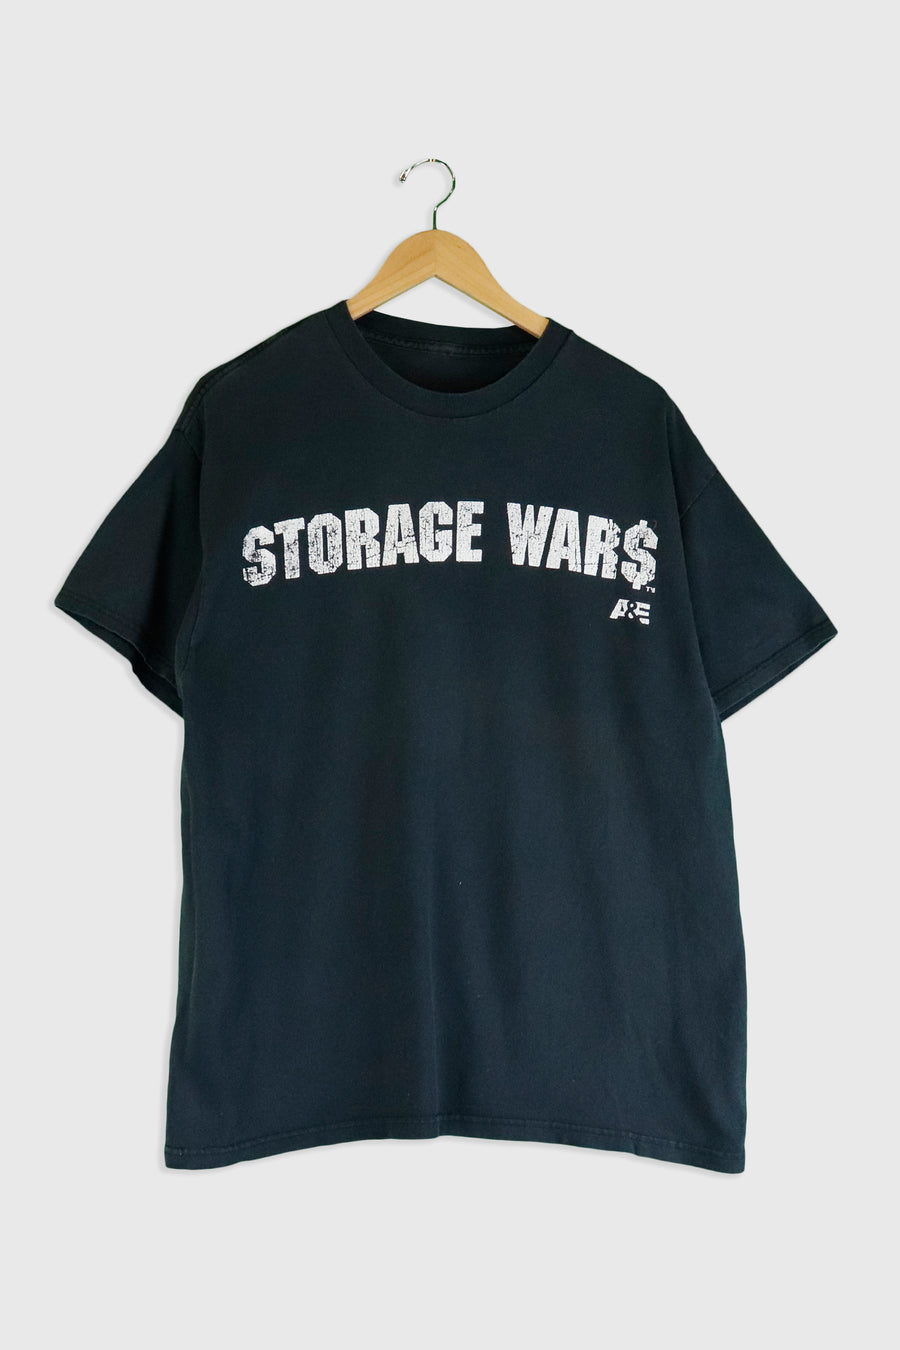 Vintage Storage Wars 'A&E' T Shirt Sz L